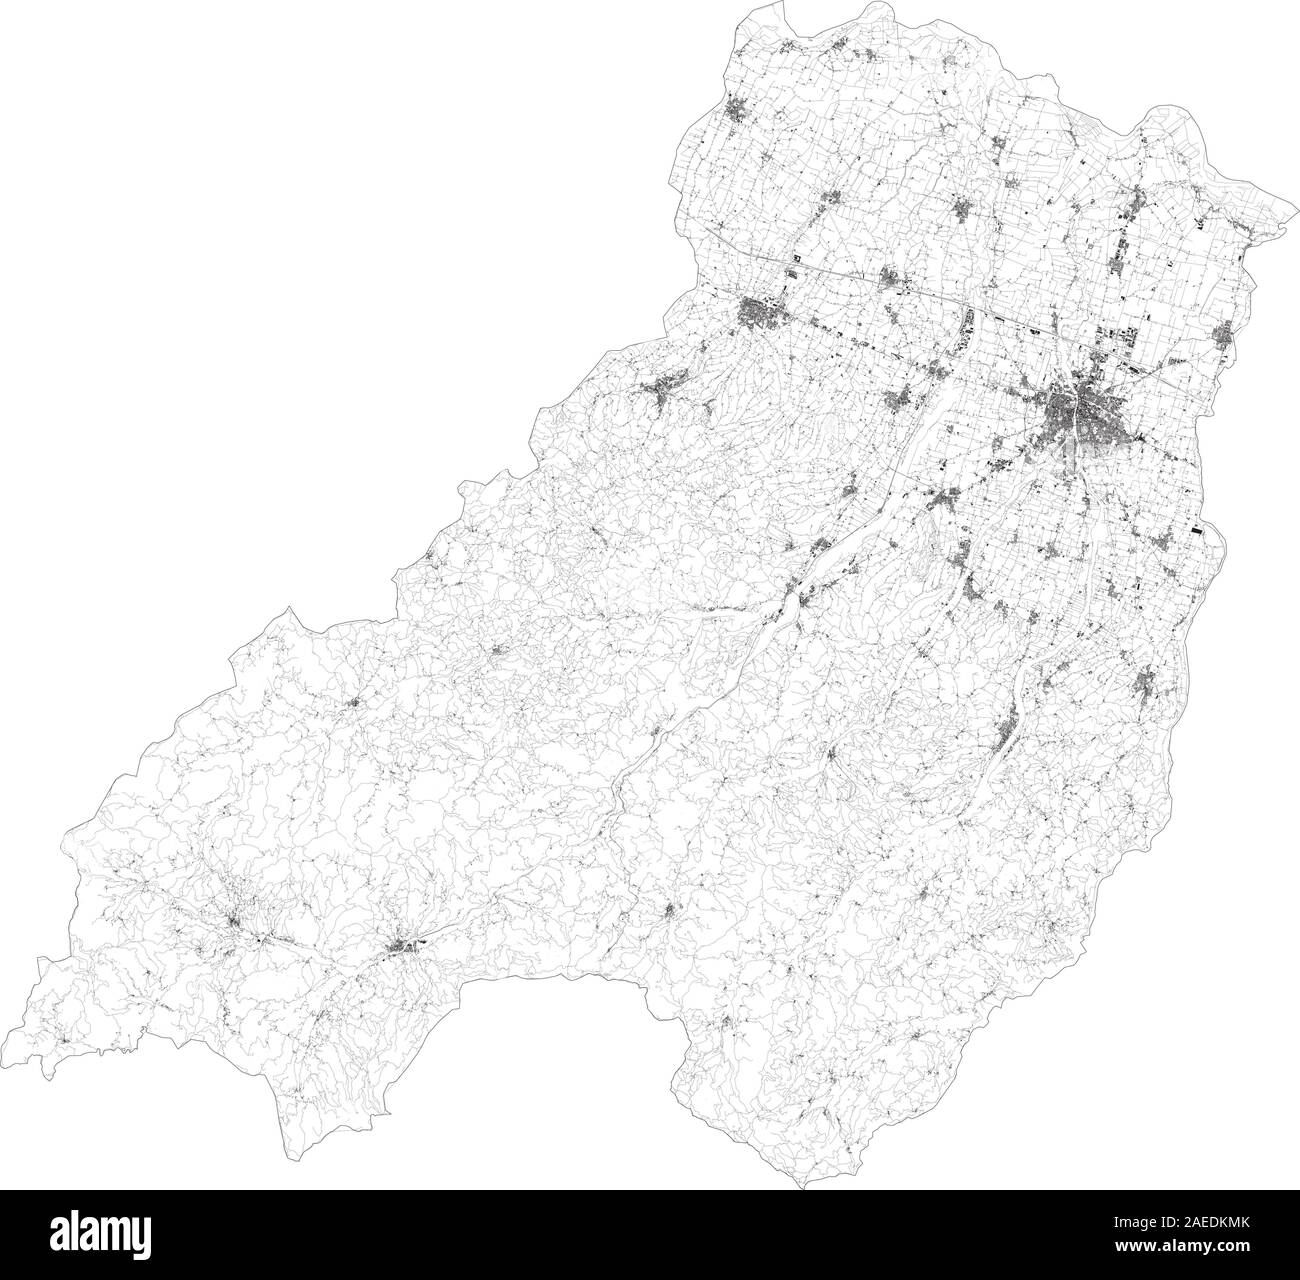 Sat-Karte der Provinz von Parma, Städte und Straßen, Gebäude und Straßen der Umgebung. Region Emilia-Romagna, Italien. Karte Straßen Stock Vektor